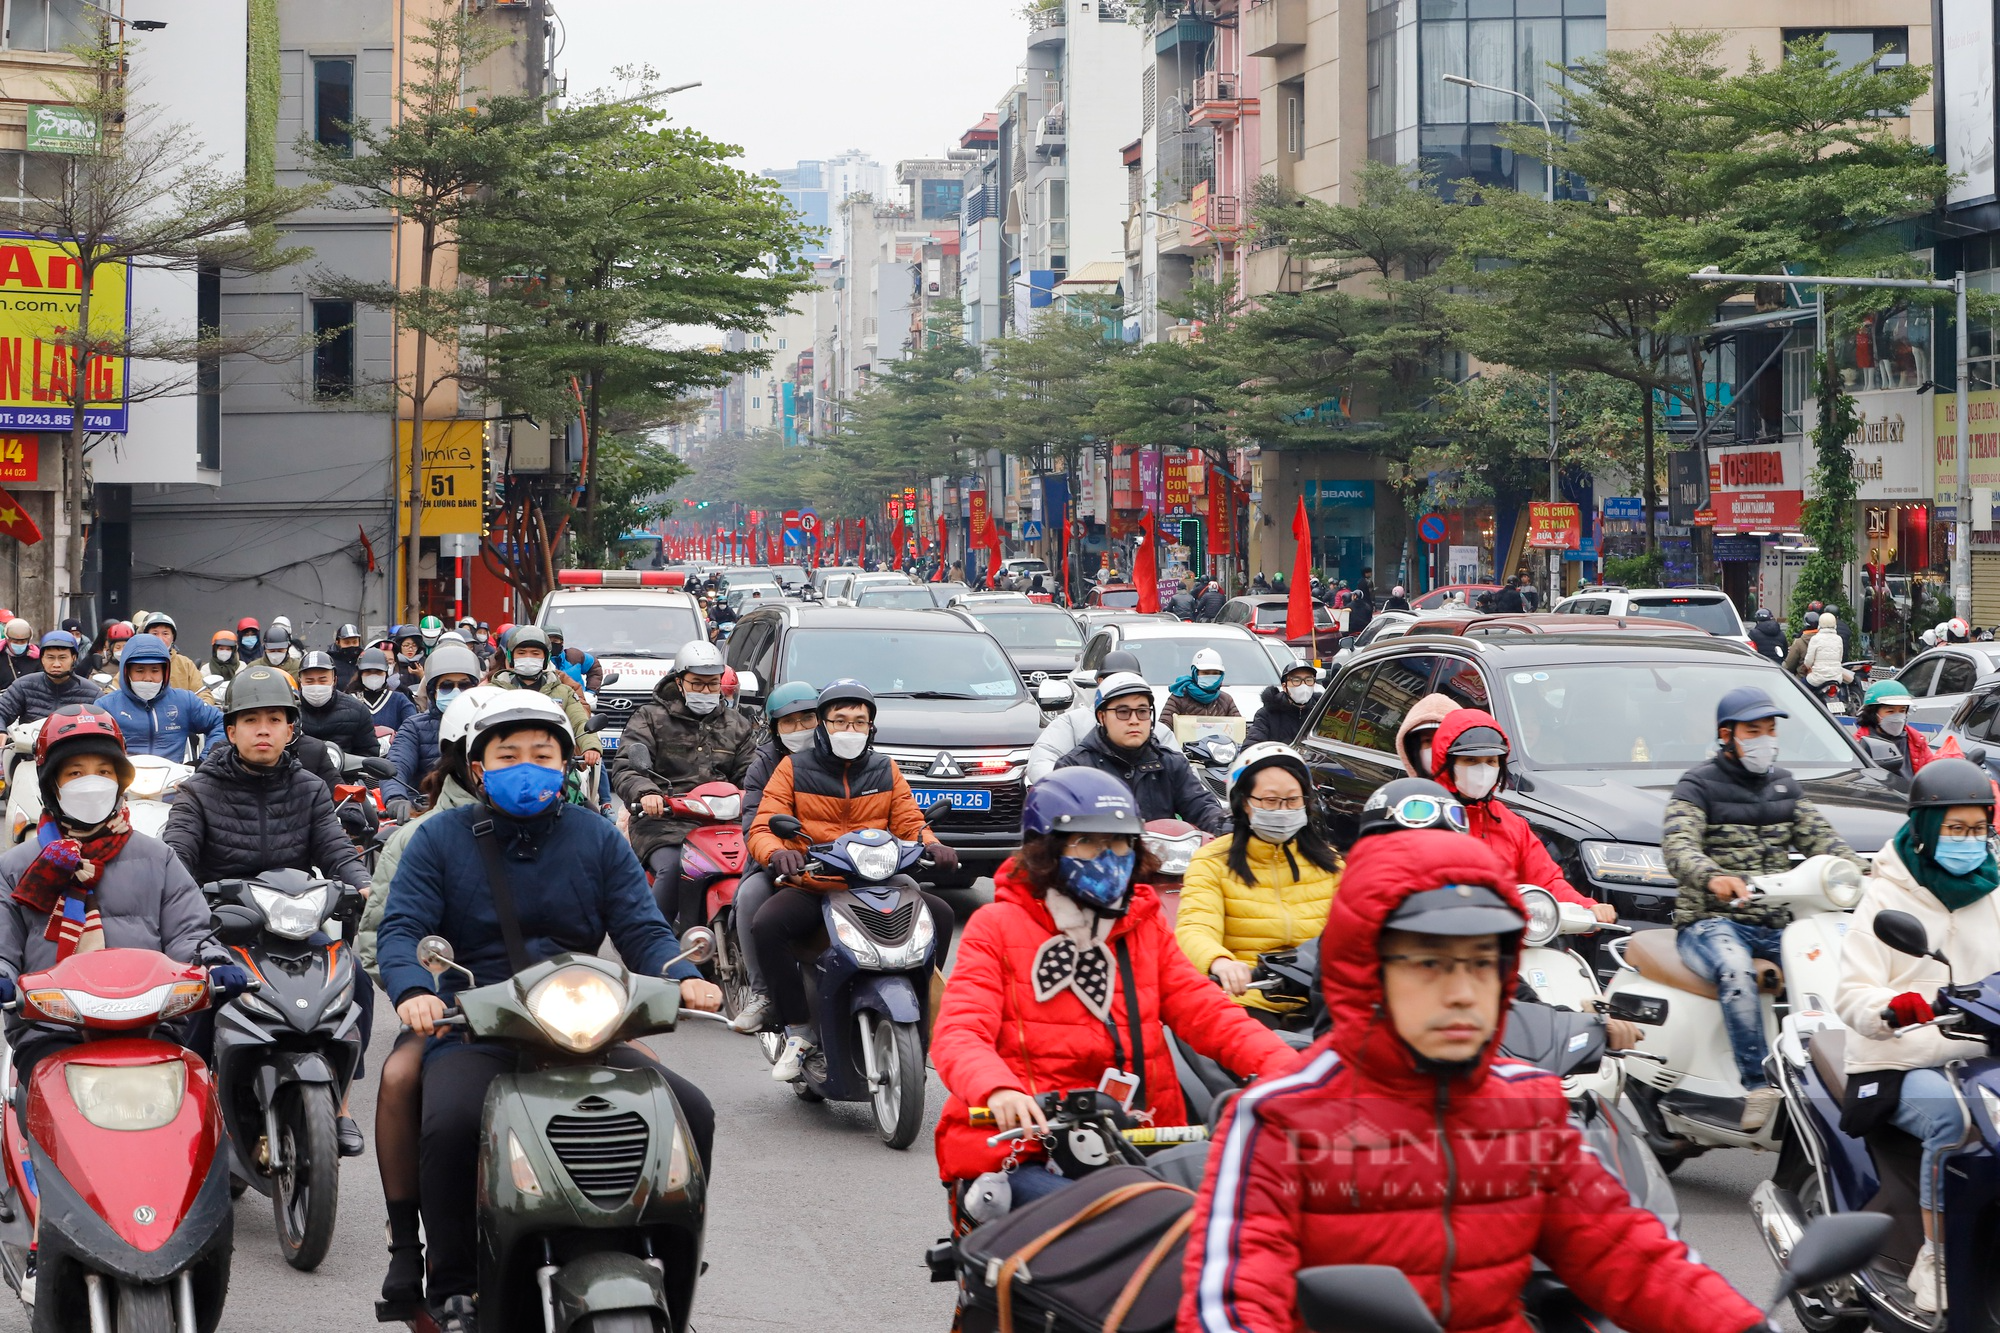 Xe buýt hỏng giữa đường, đường phố Hà Nội ùn tắc kéo dài hàng Km ngày cận Tết - Ảnh 10.